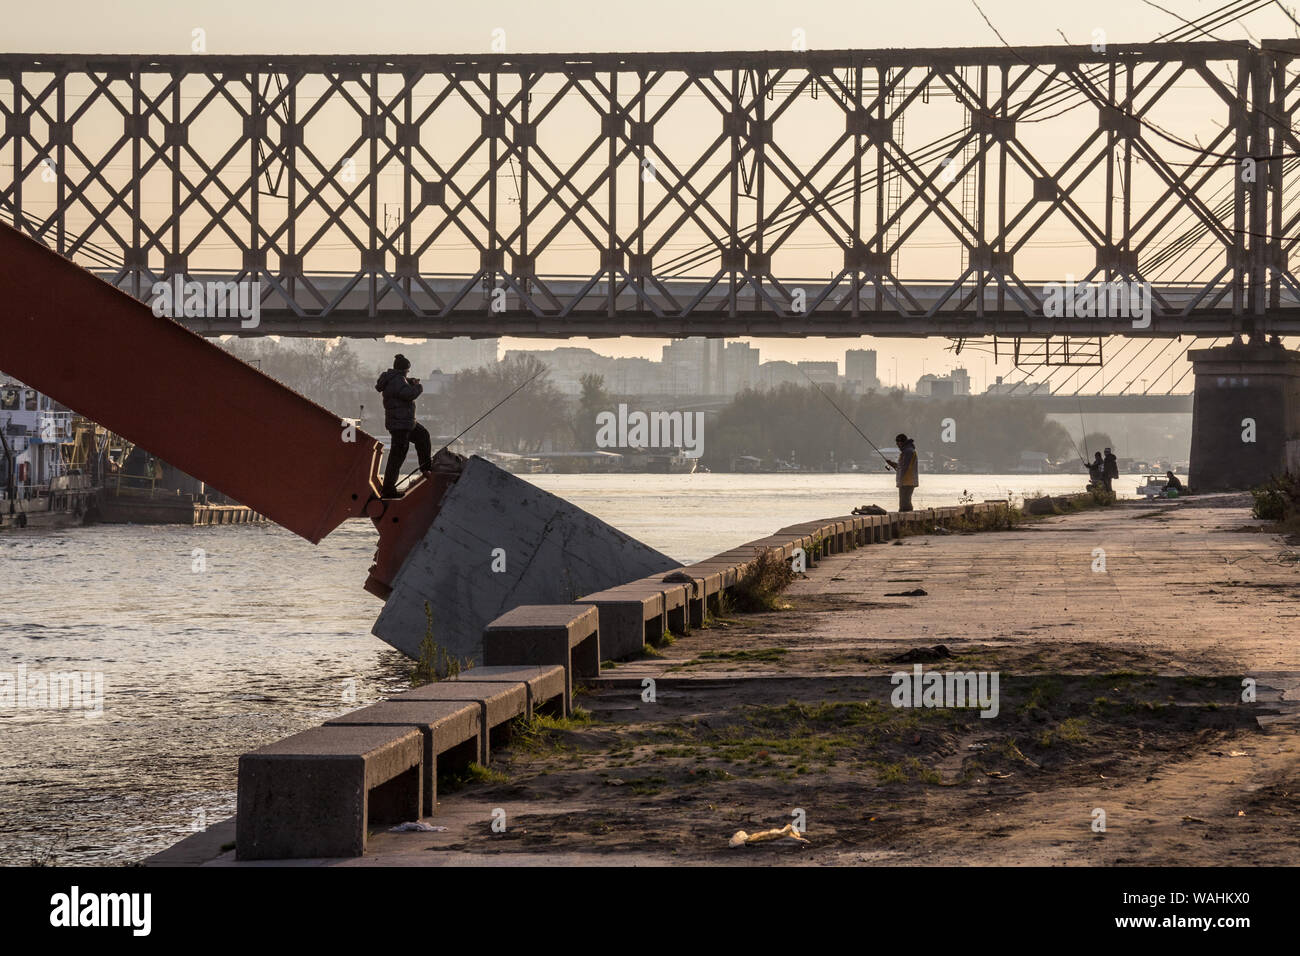 Belgrad, SERBIEN - November 23, 2014: Fischer mit ihren Stangen unter Brücken am Ufer der Ufer des Flusses Sava in der Dämmerung Bild Stockfoto